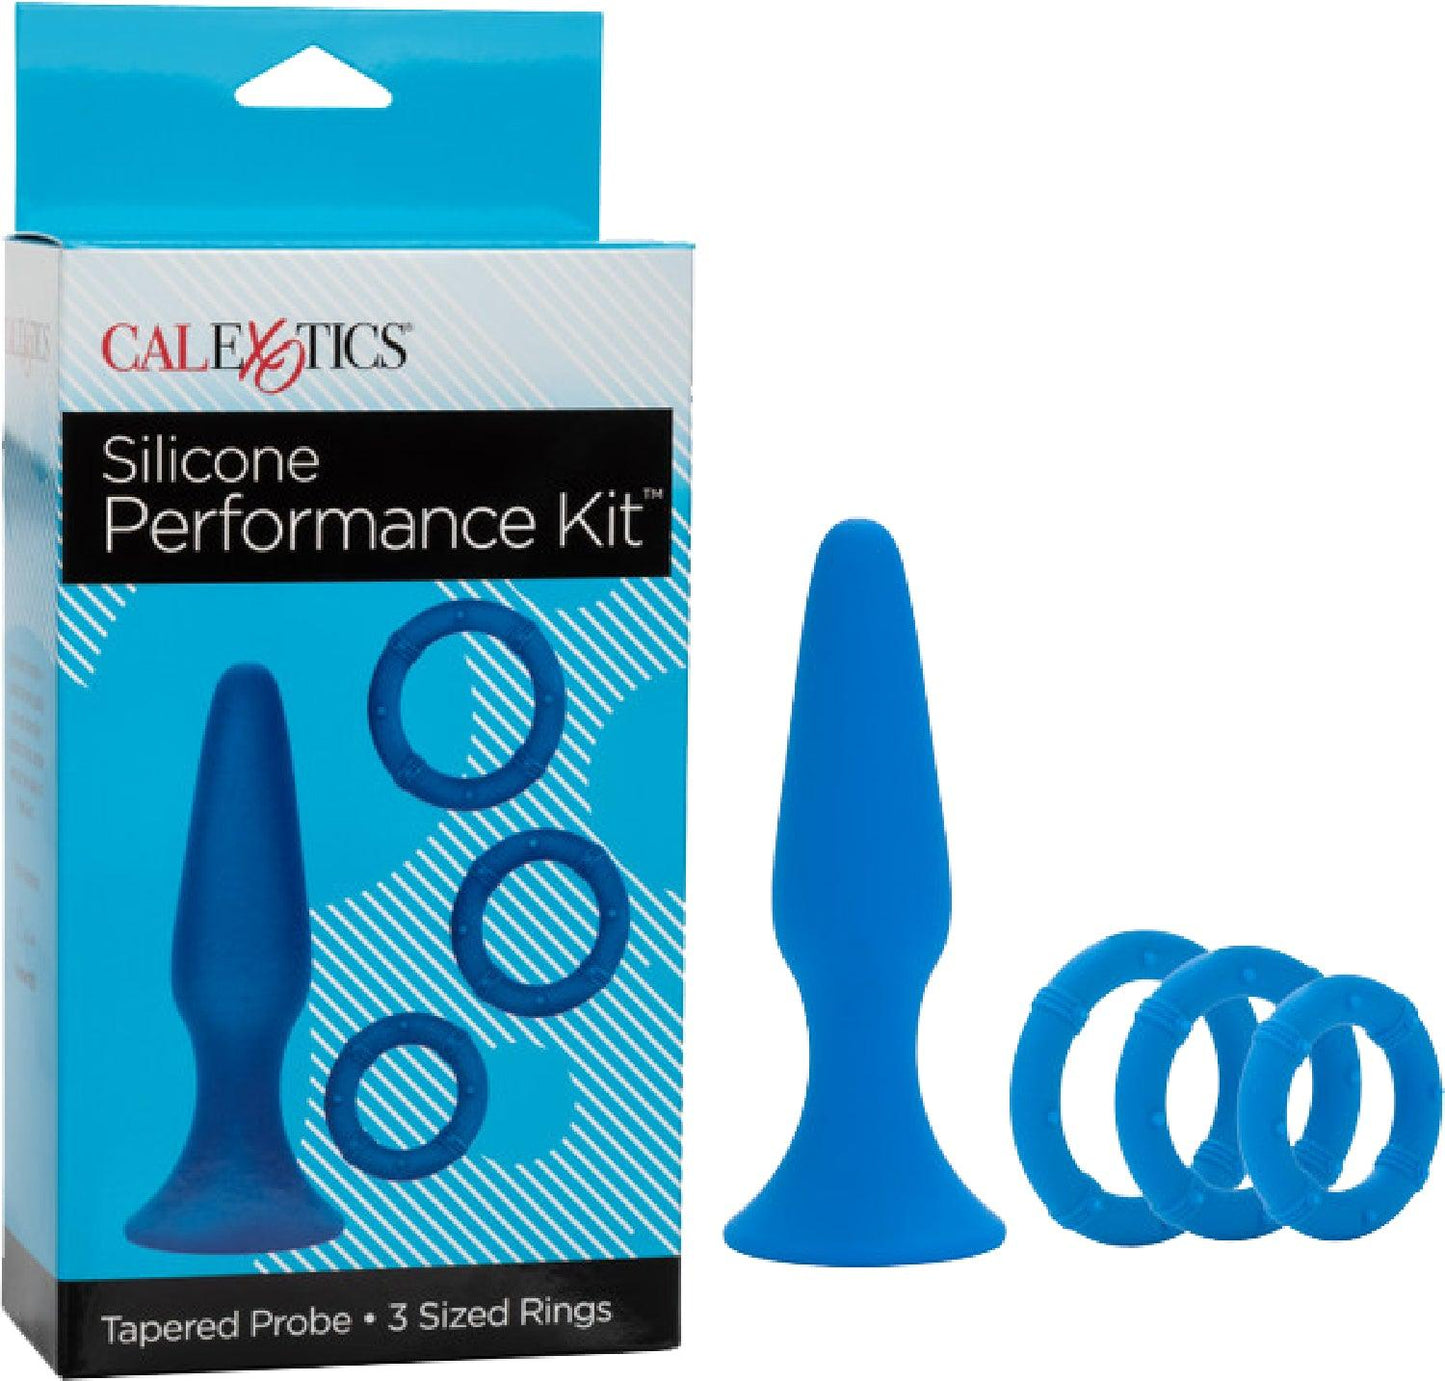 Silicone Performance Kit - Take A Peek